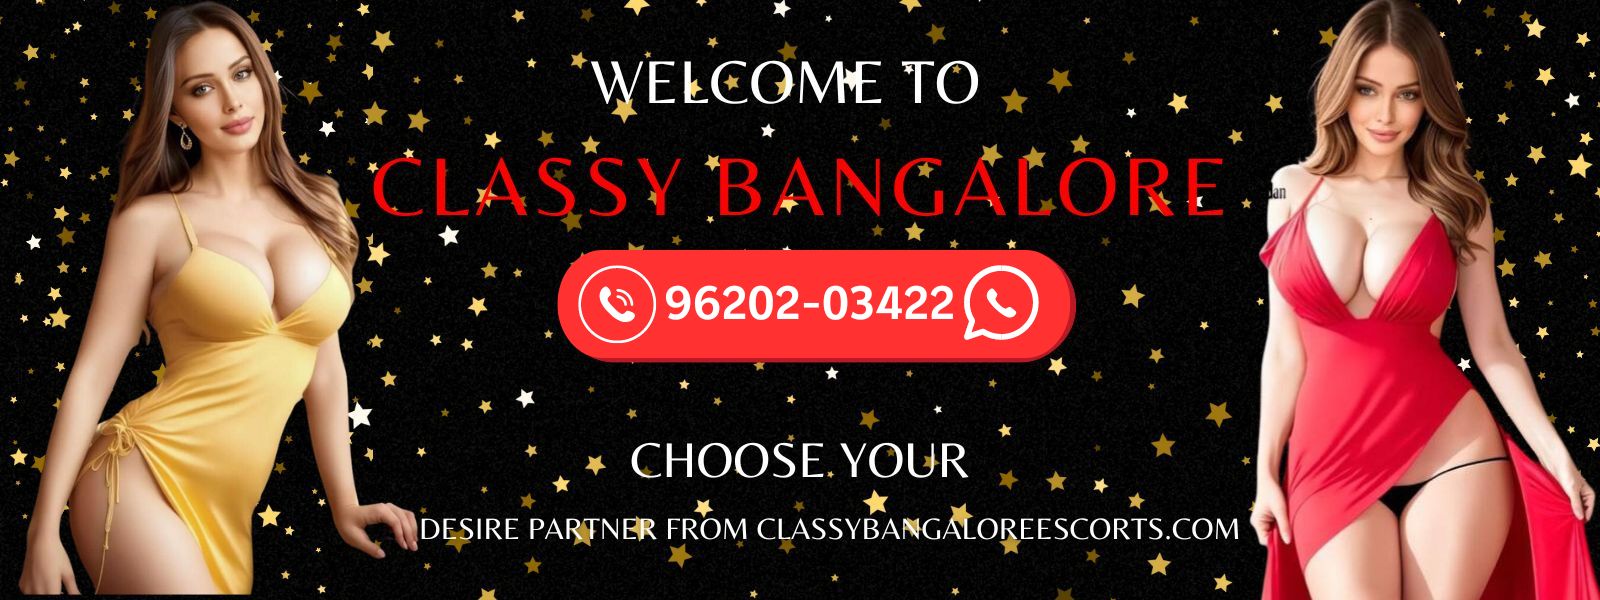 call girls in bangalore